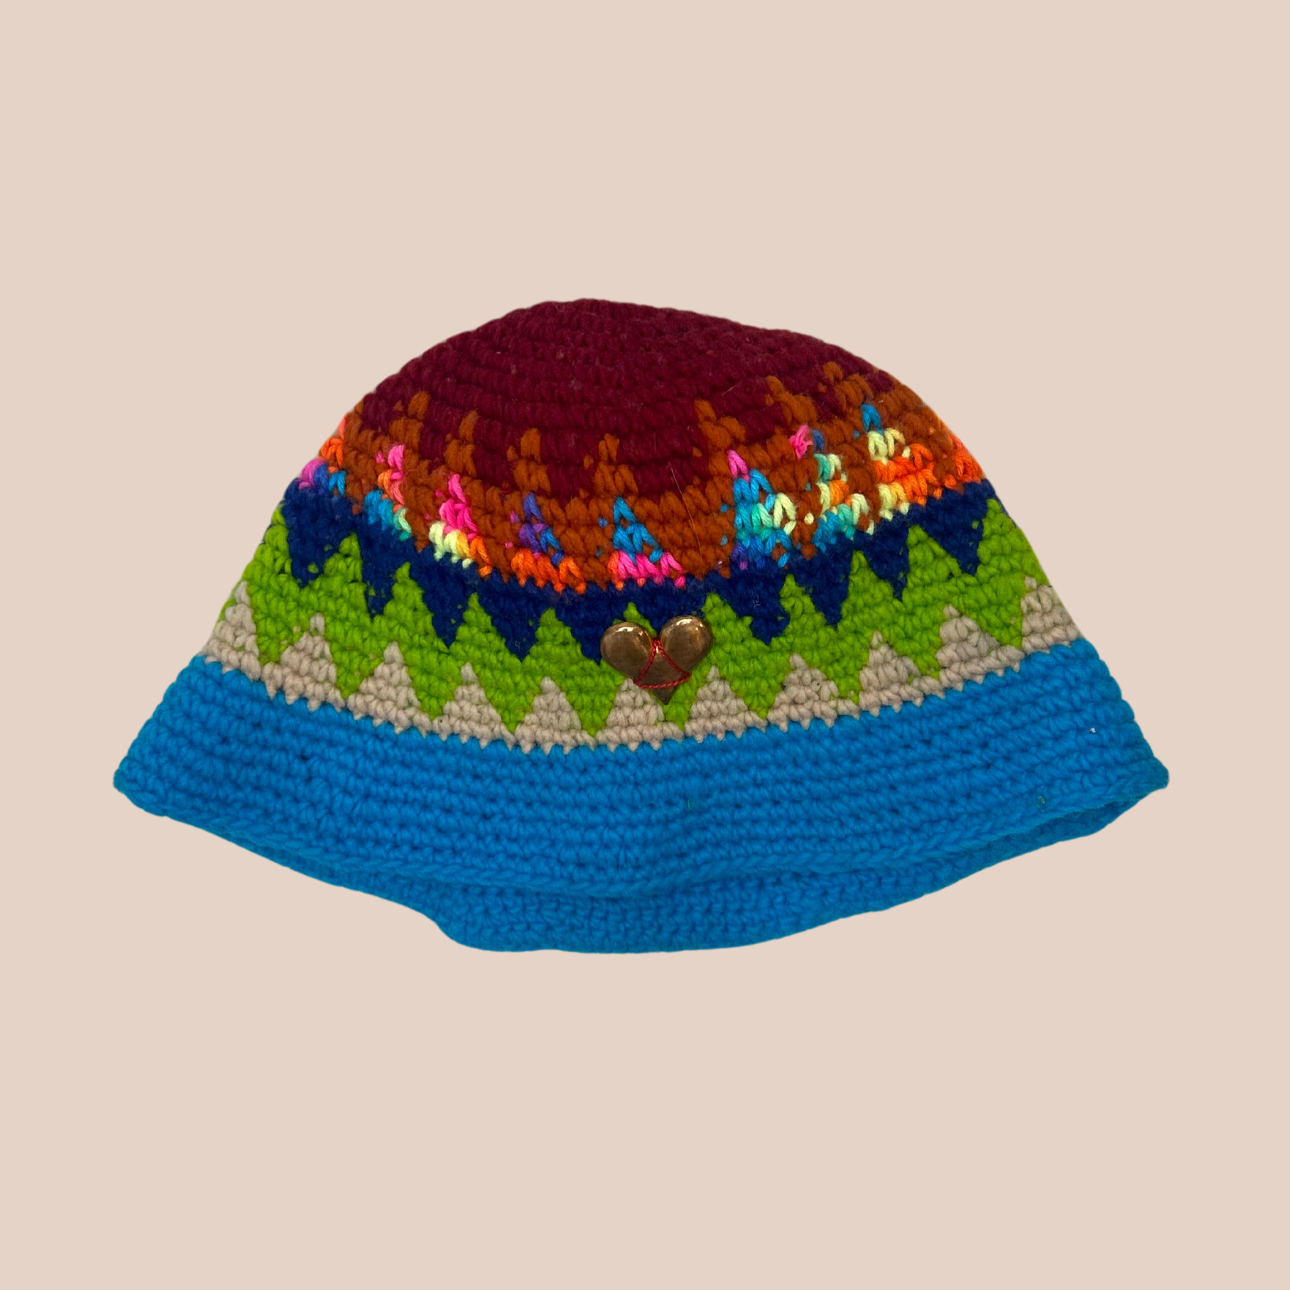 Un bucket hat crocheté en laine et acrylique, arborant des couleurs vives et audacieuses, décoration coeur cousue main